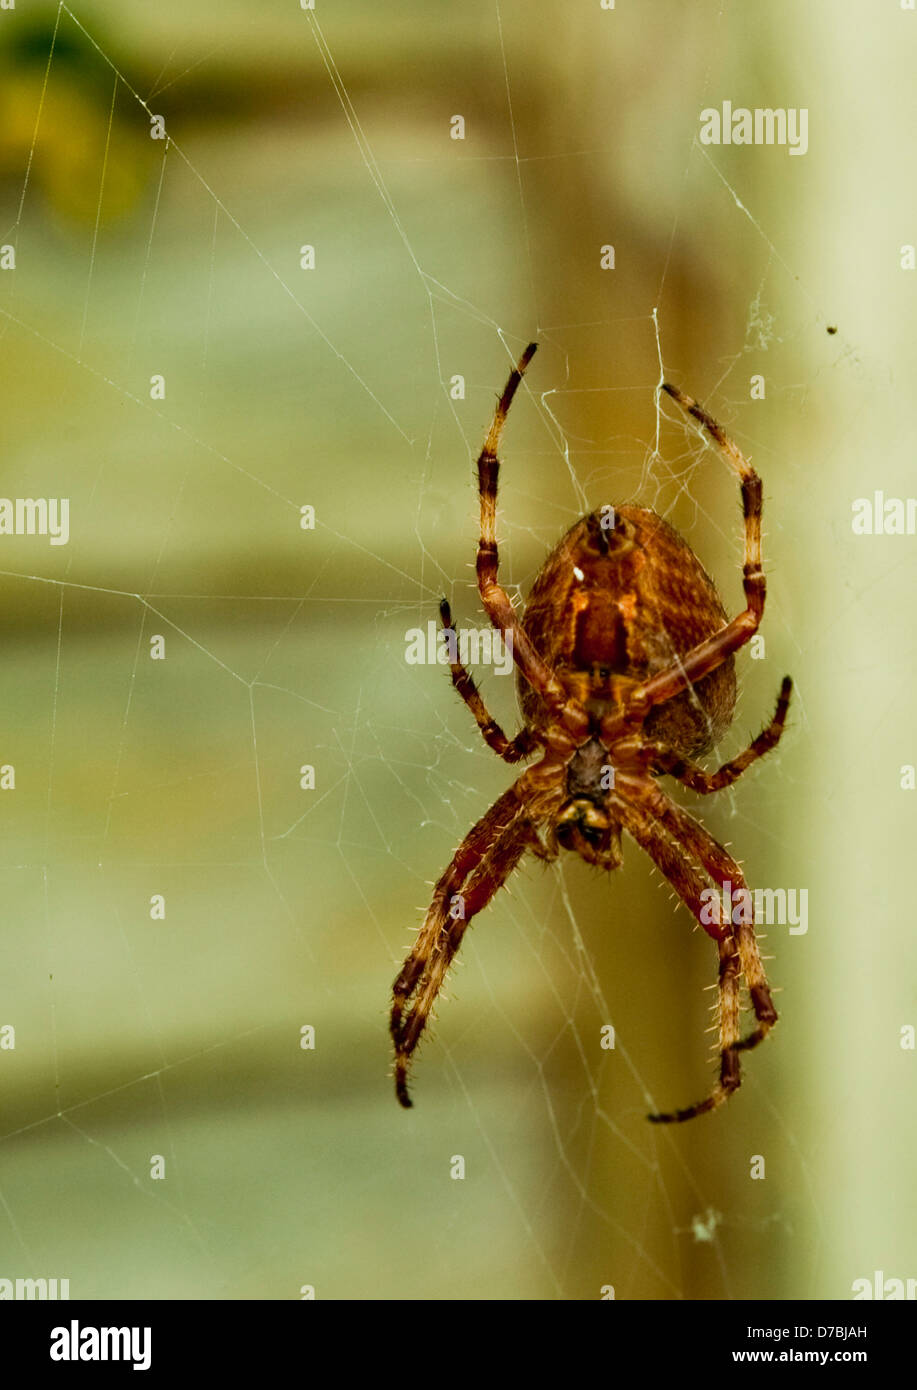 Spinne im Netz, entschärft braun Hintergrund Stockfoto